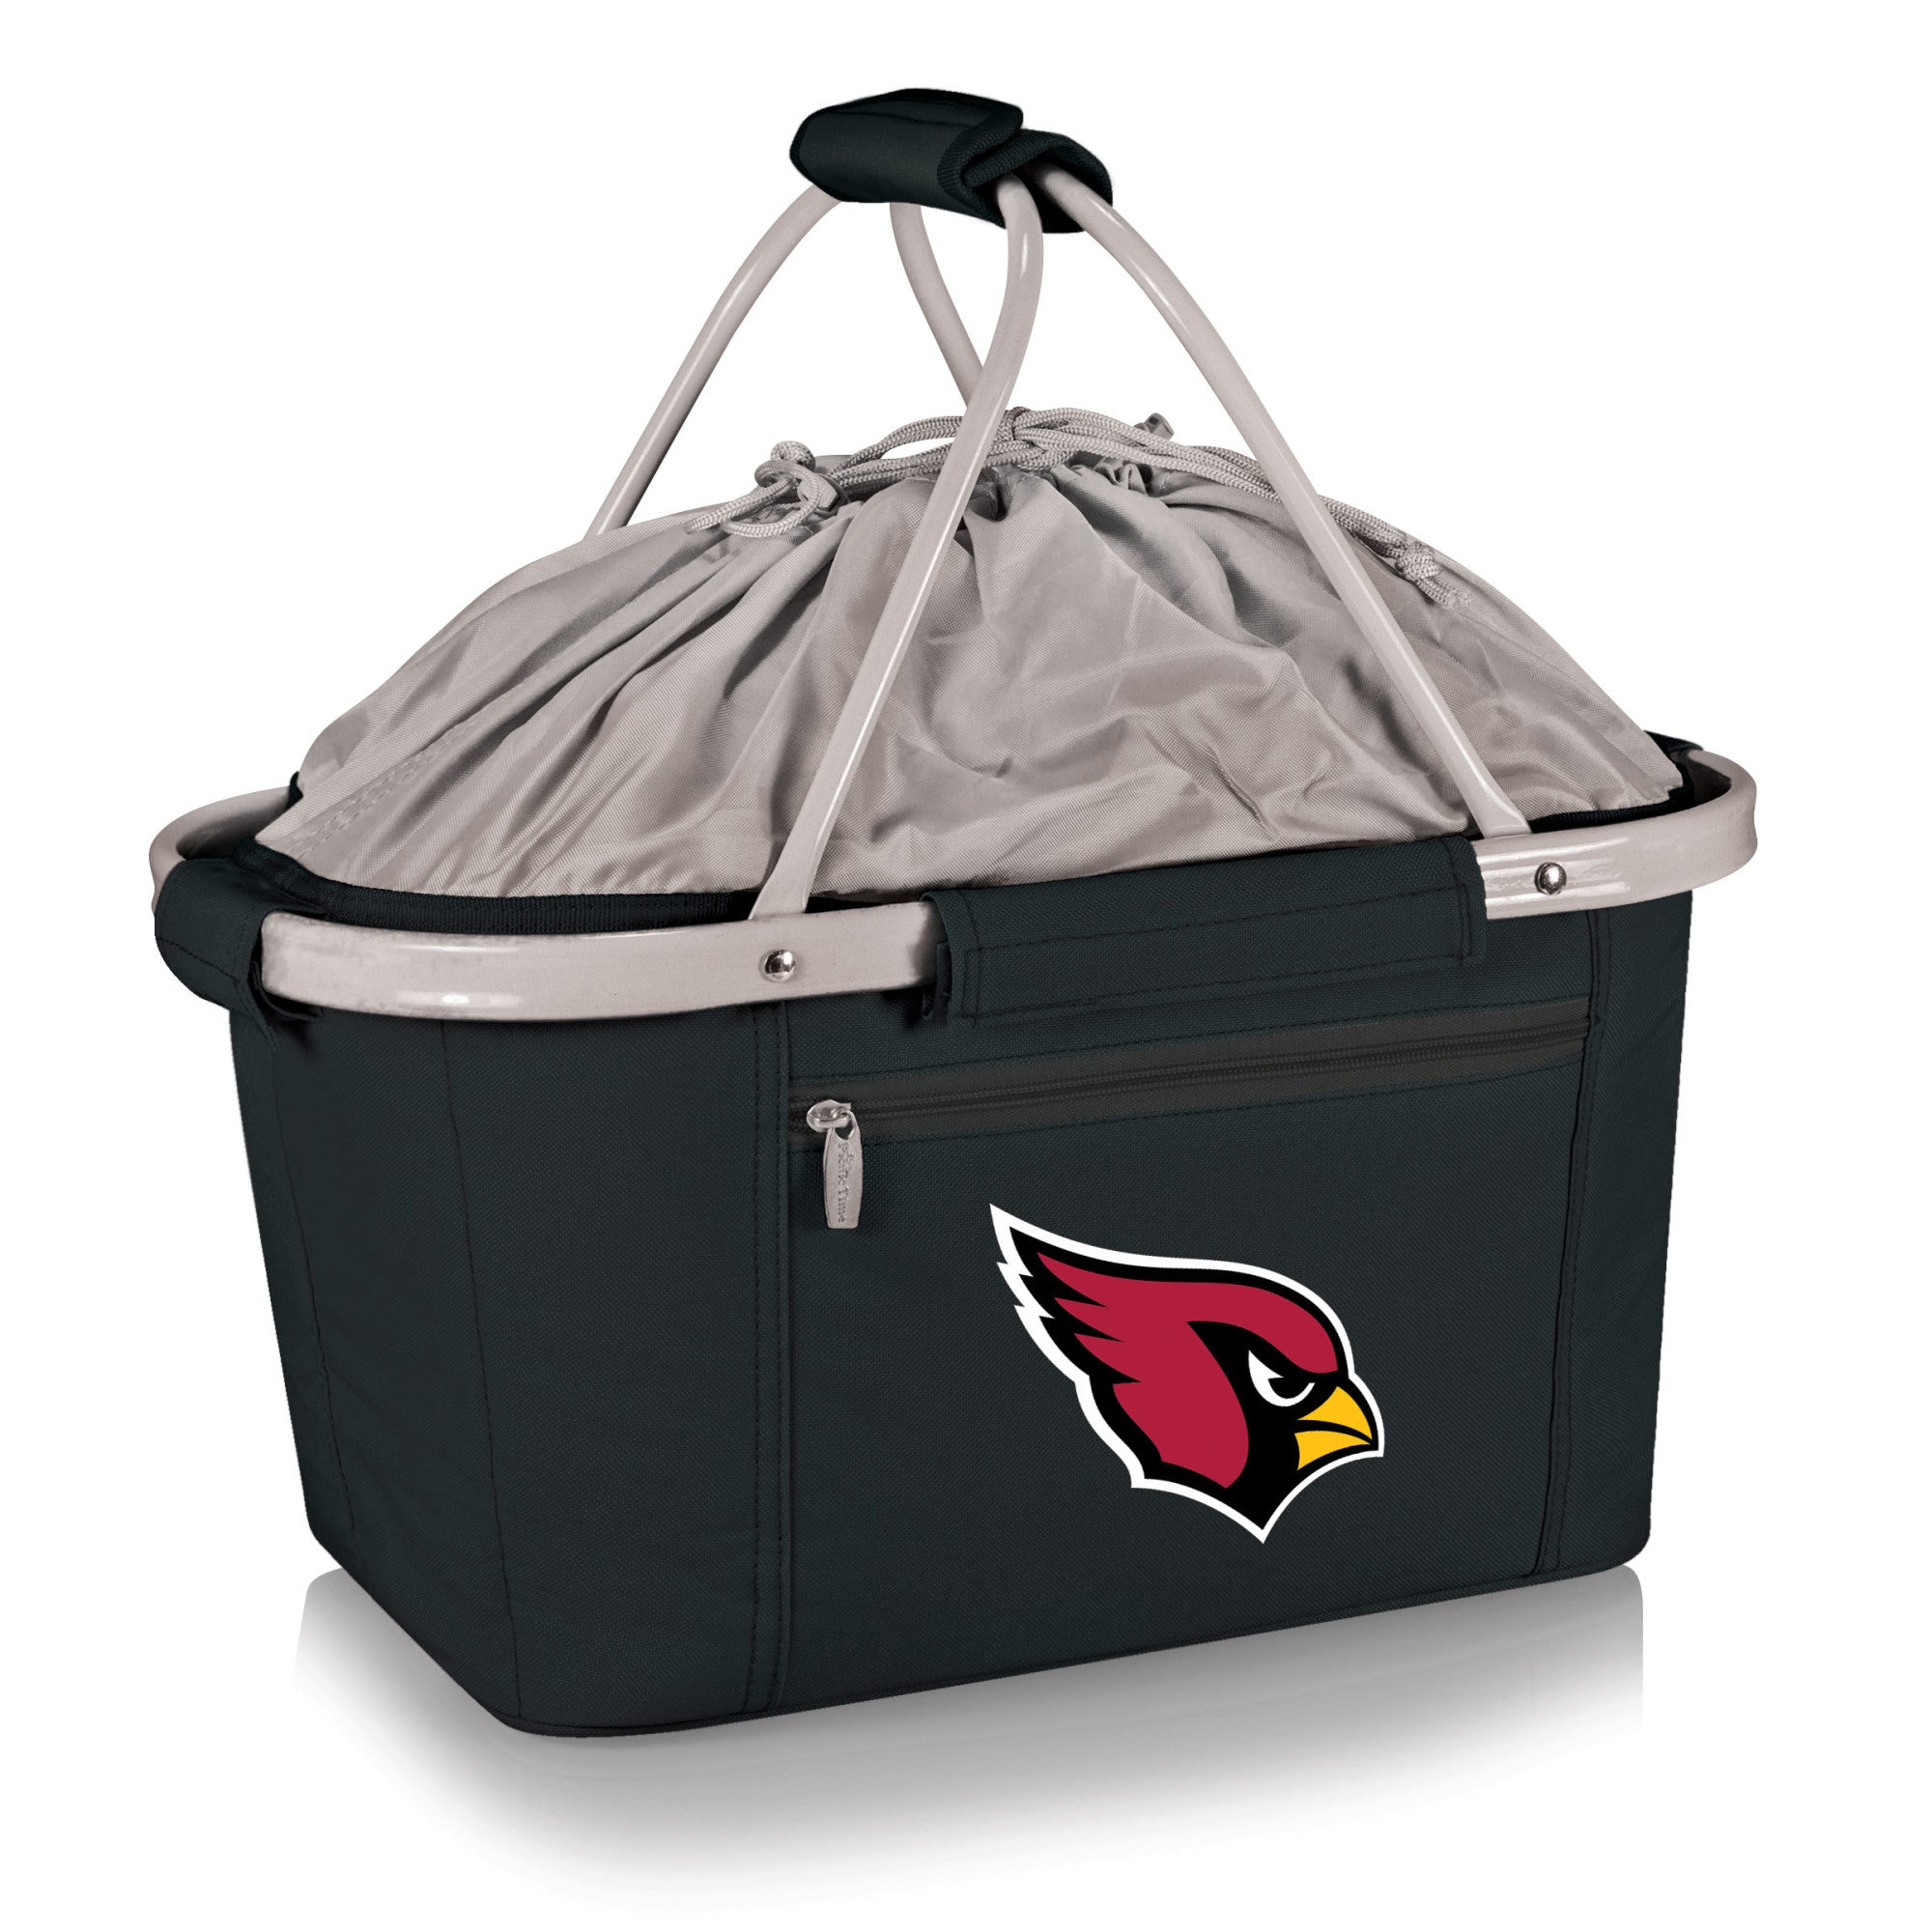 Arizona Cardinals - Metro Basket Collapsible Cooler Tote, (Black)